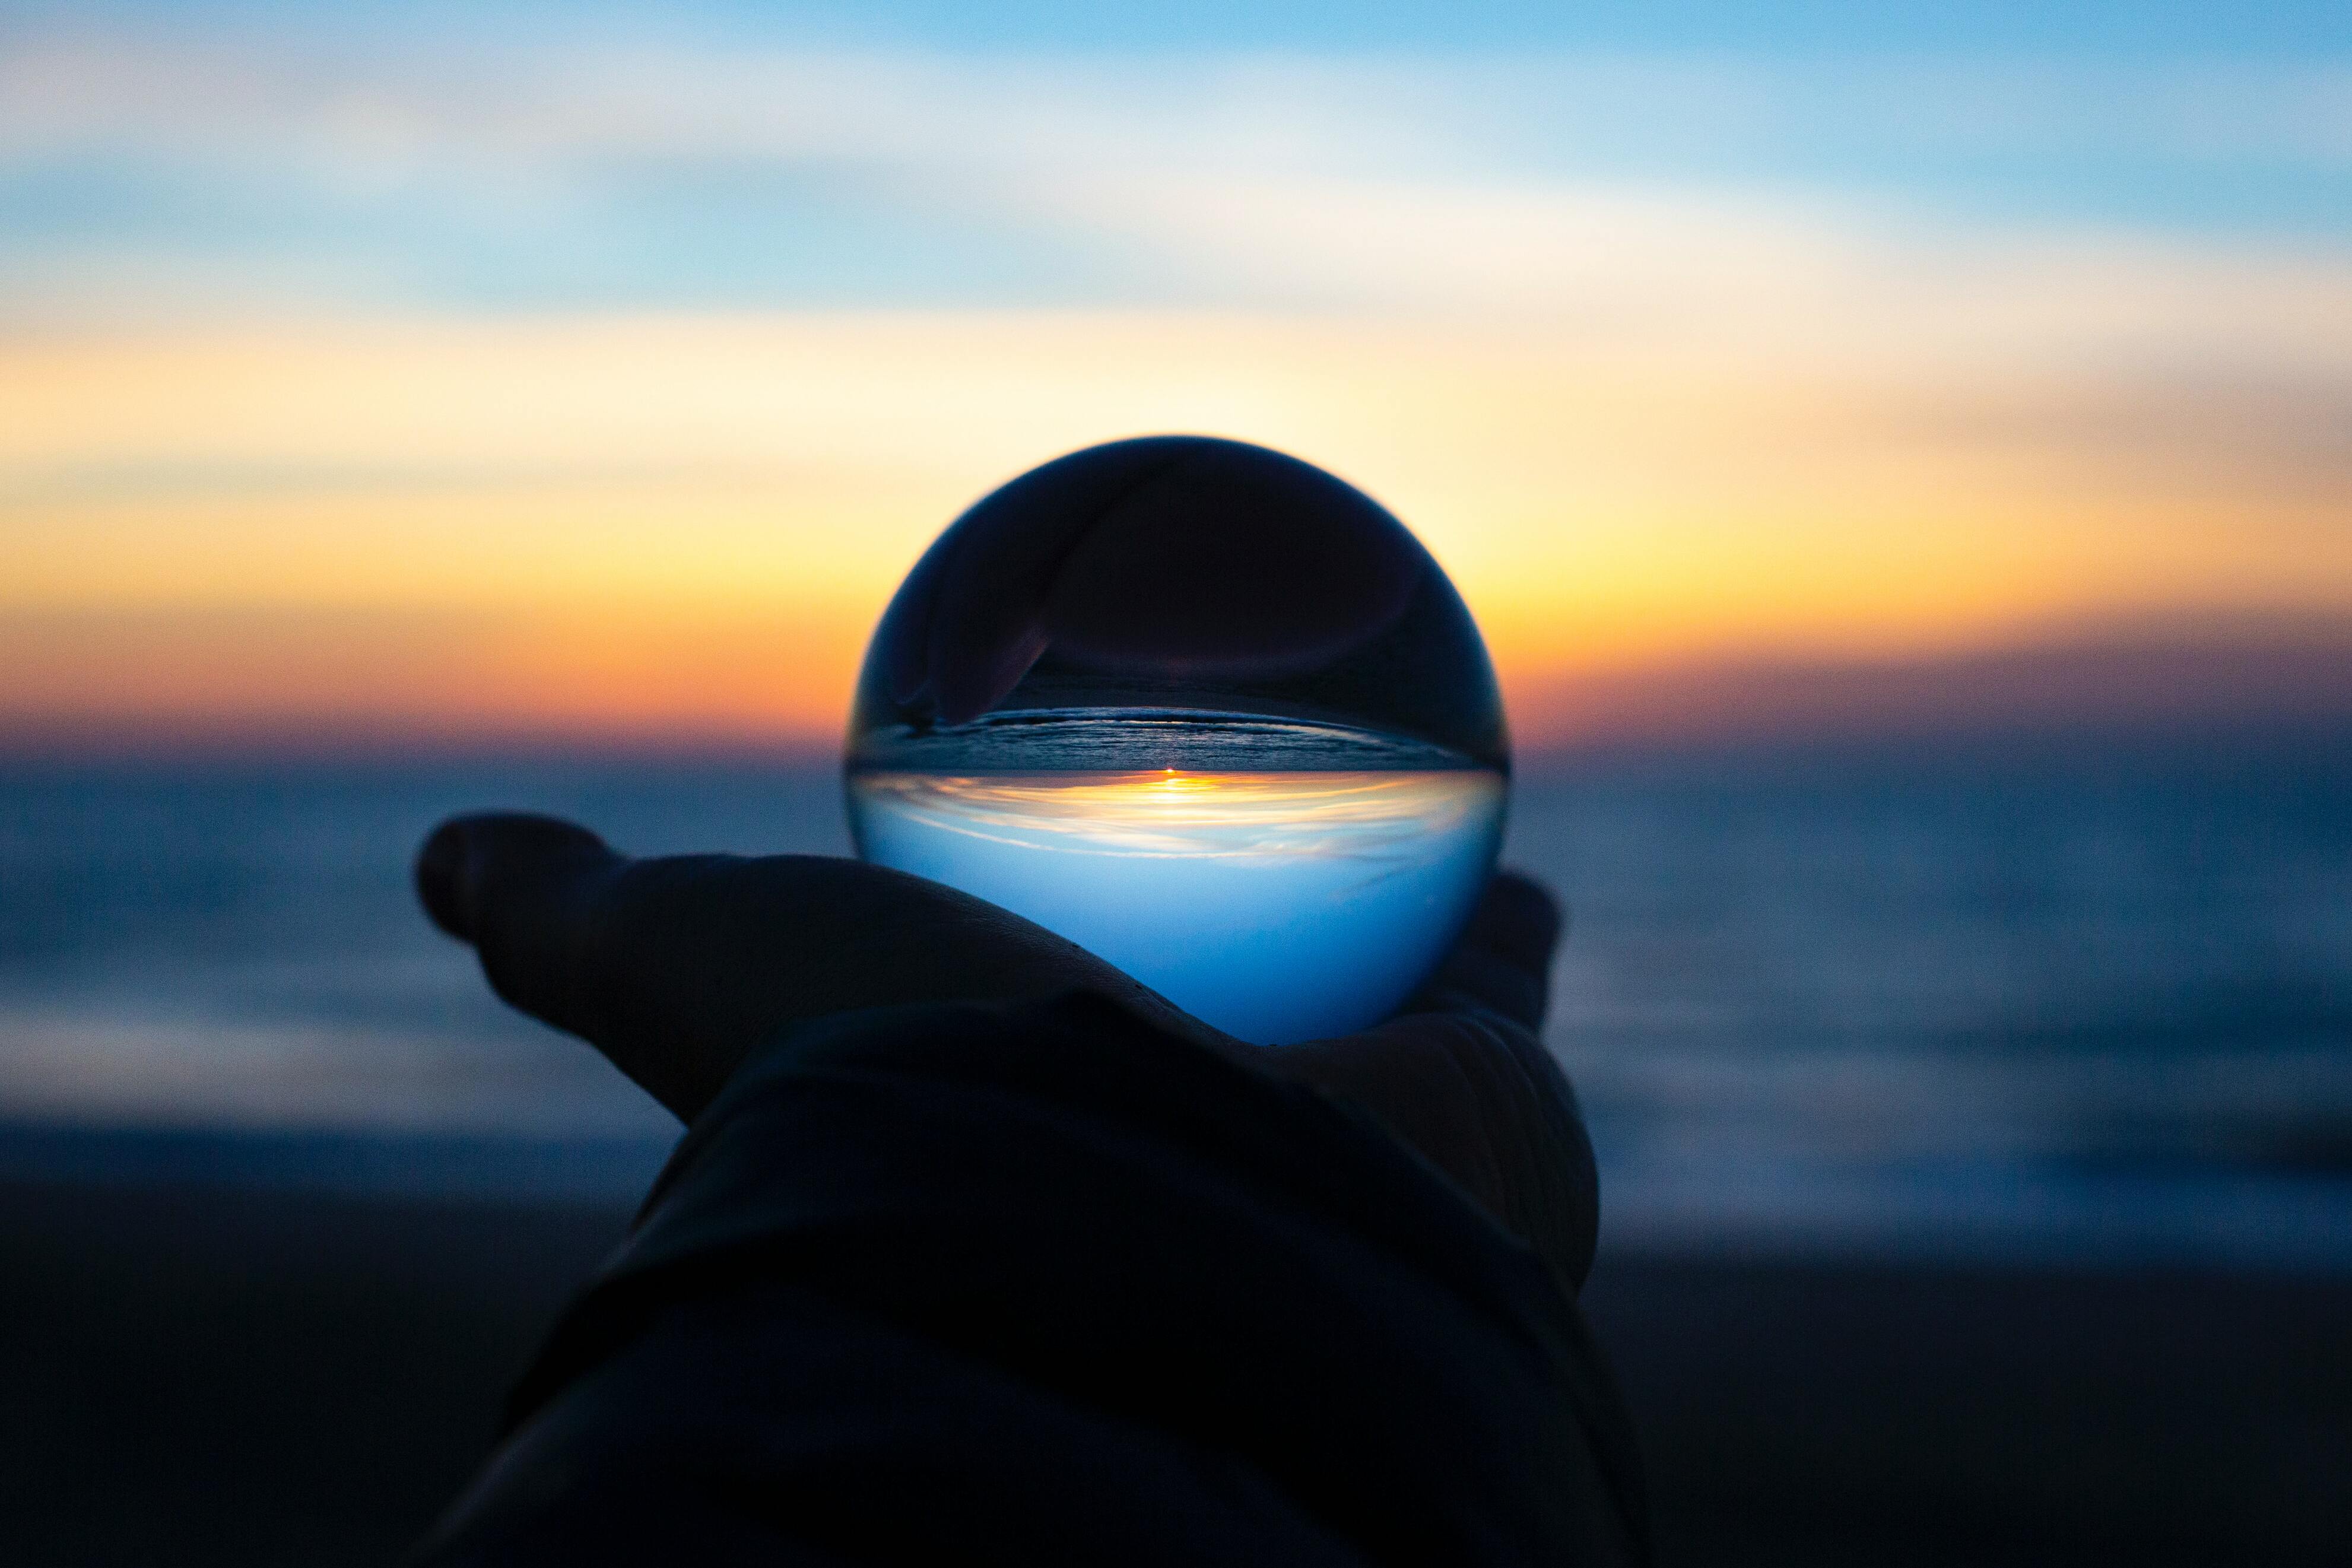 Hand holding a crystal ball on a beach